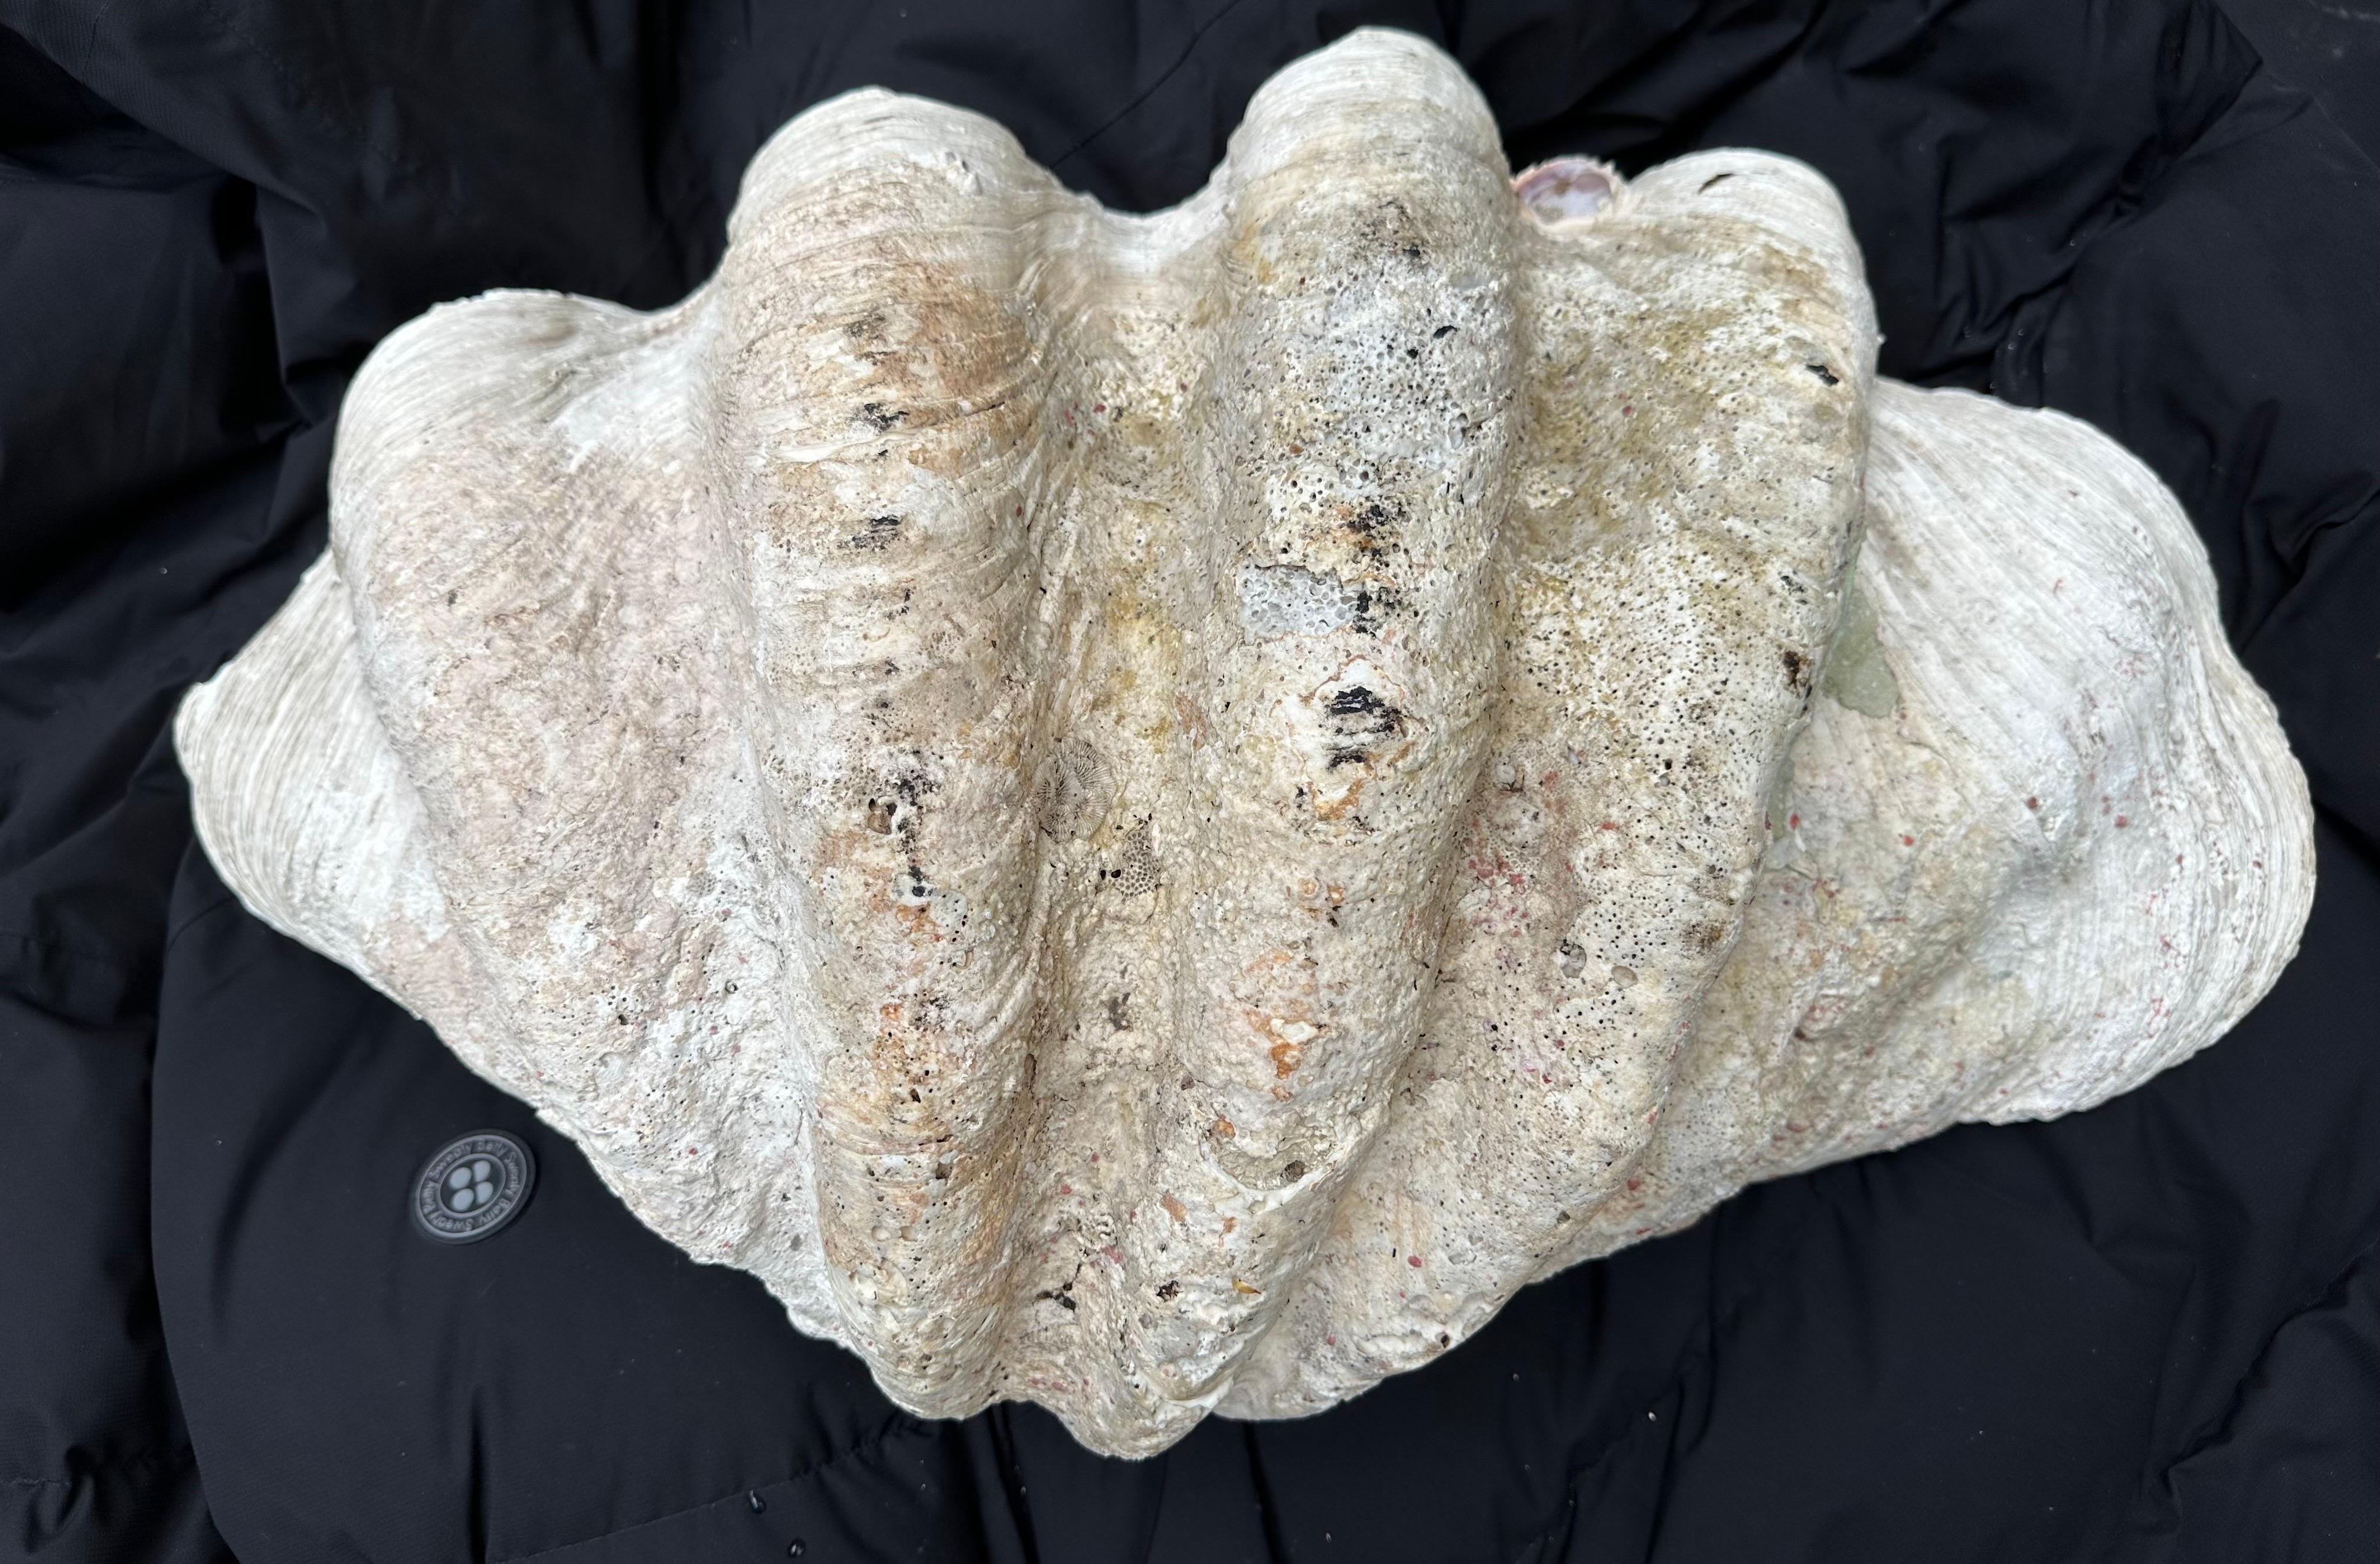 Coquilles de palourdes géantes naturelles à patine laiteuse provenant du Pacifique Sud ou de l'océan Indien. Ils présentent un certain degré d'altération dû à leur âge. Le second coquillage est légèrement plus petit et les deux fonctionnent bien